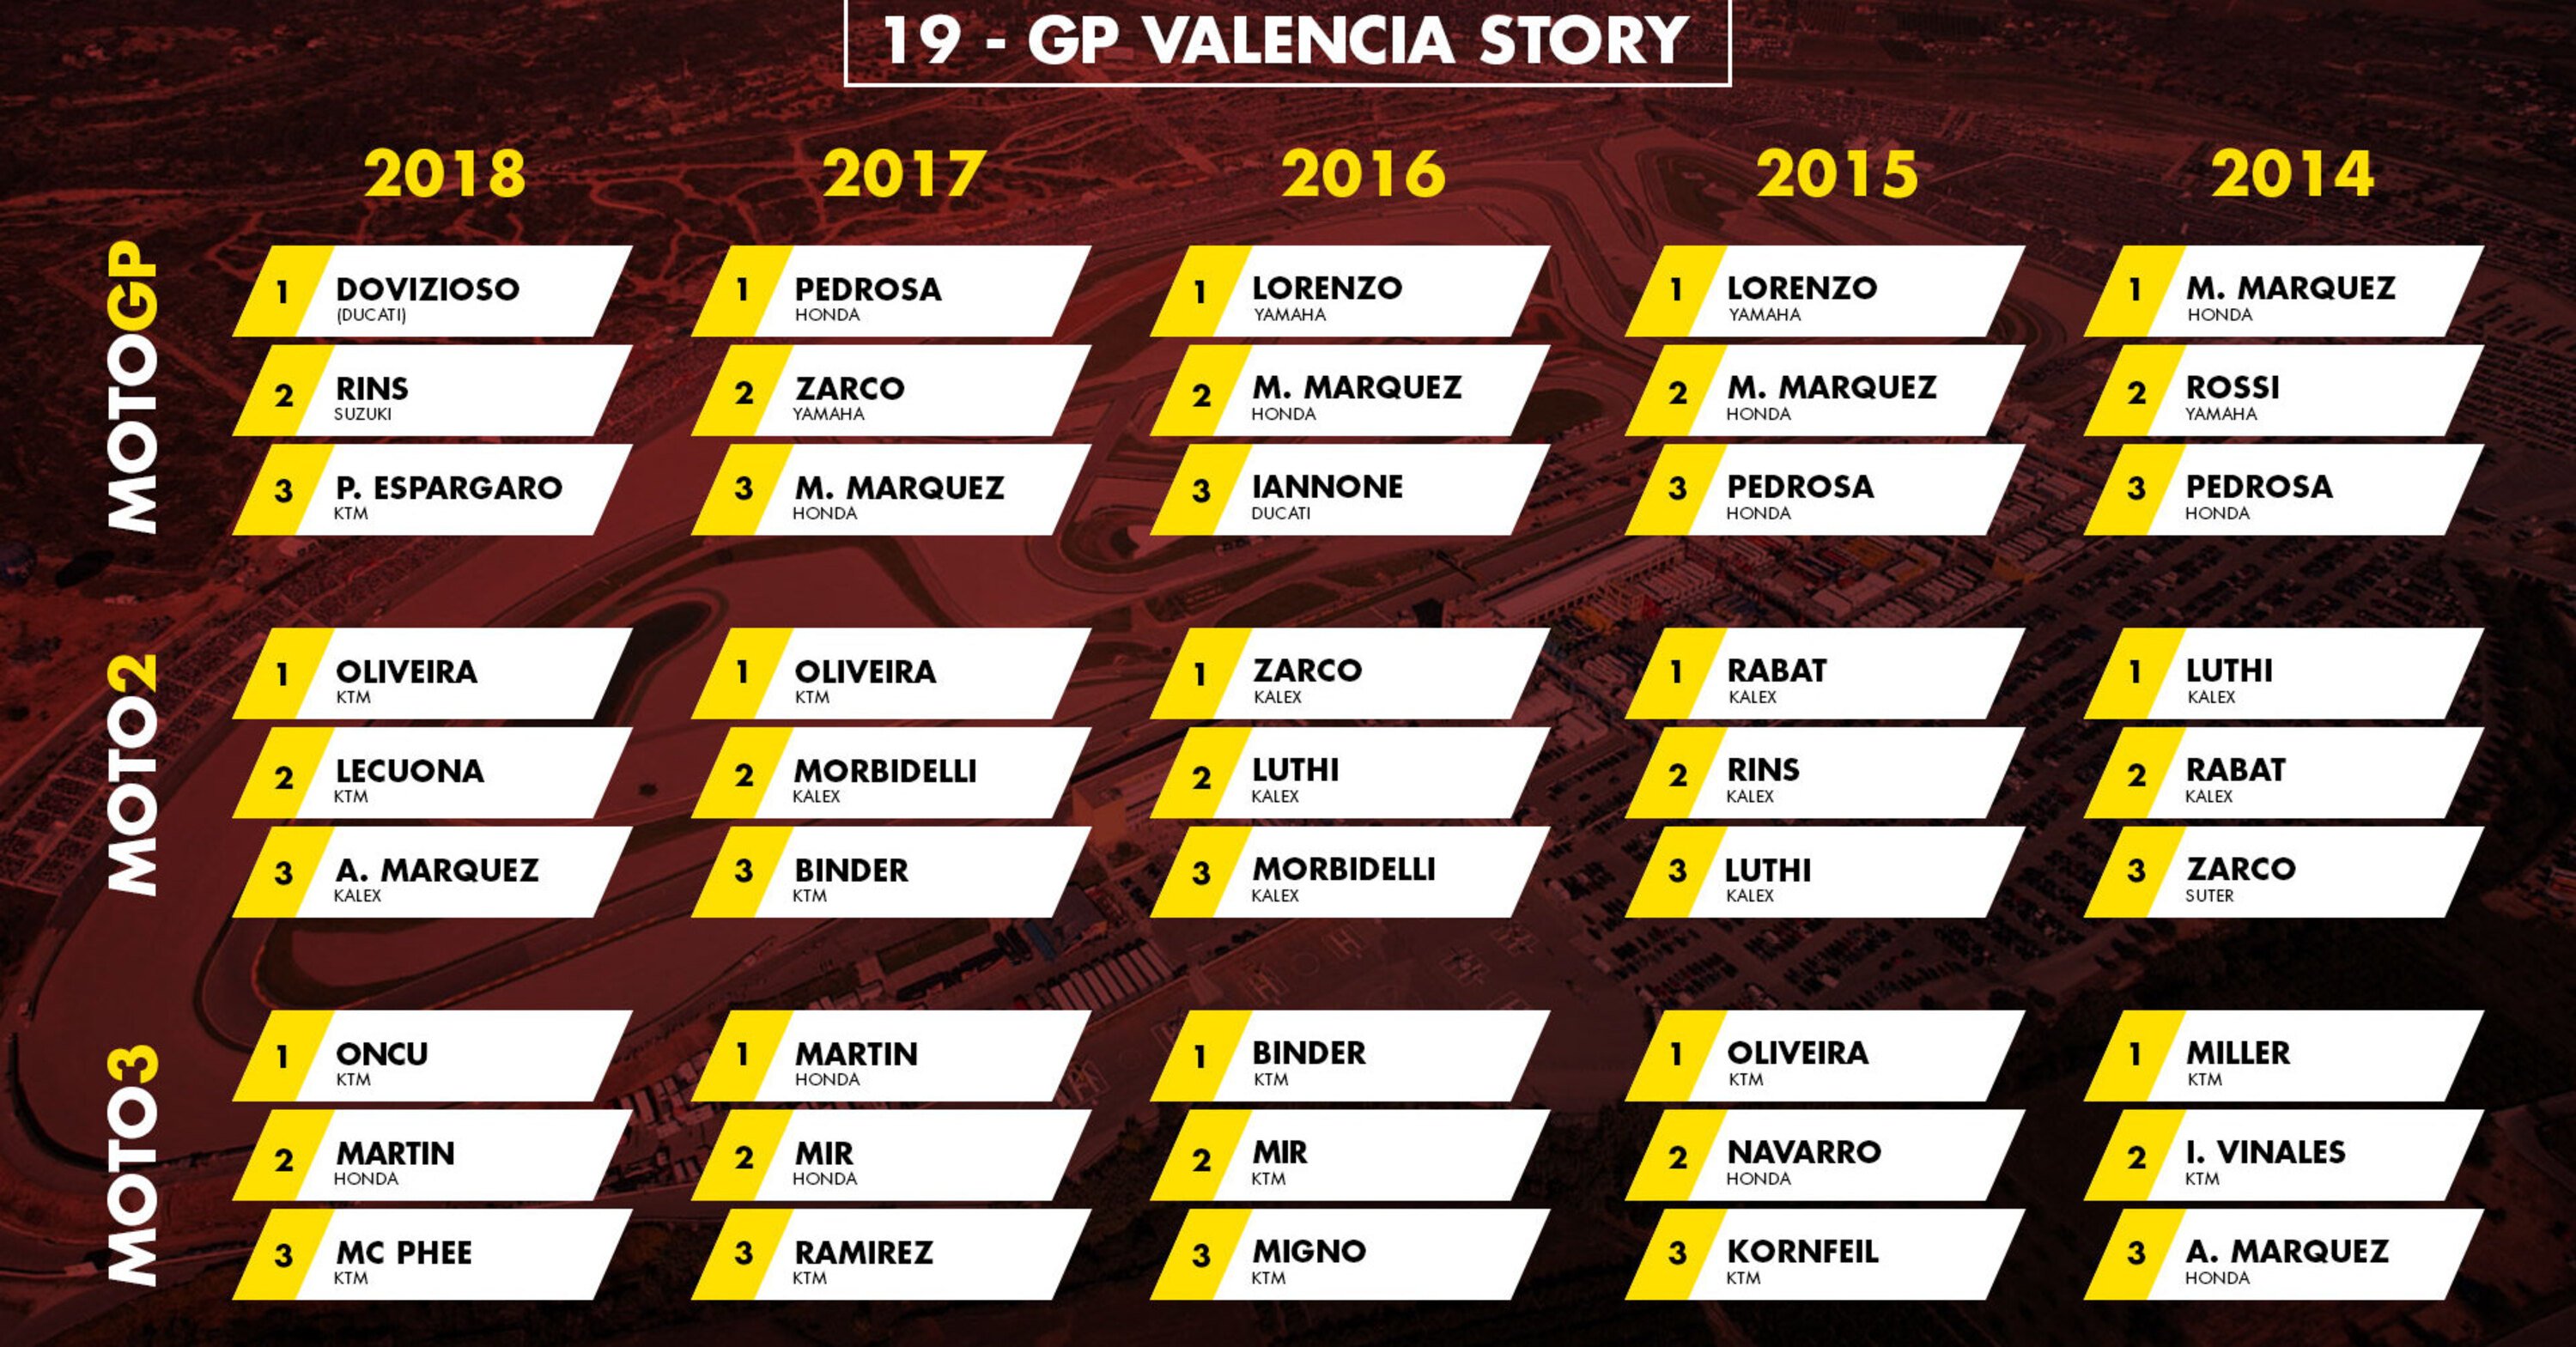 GP di Valencia 2019: vincitori e statistiche delle ultime edizioni